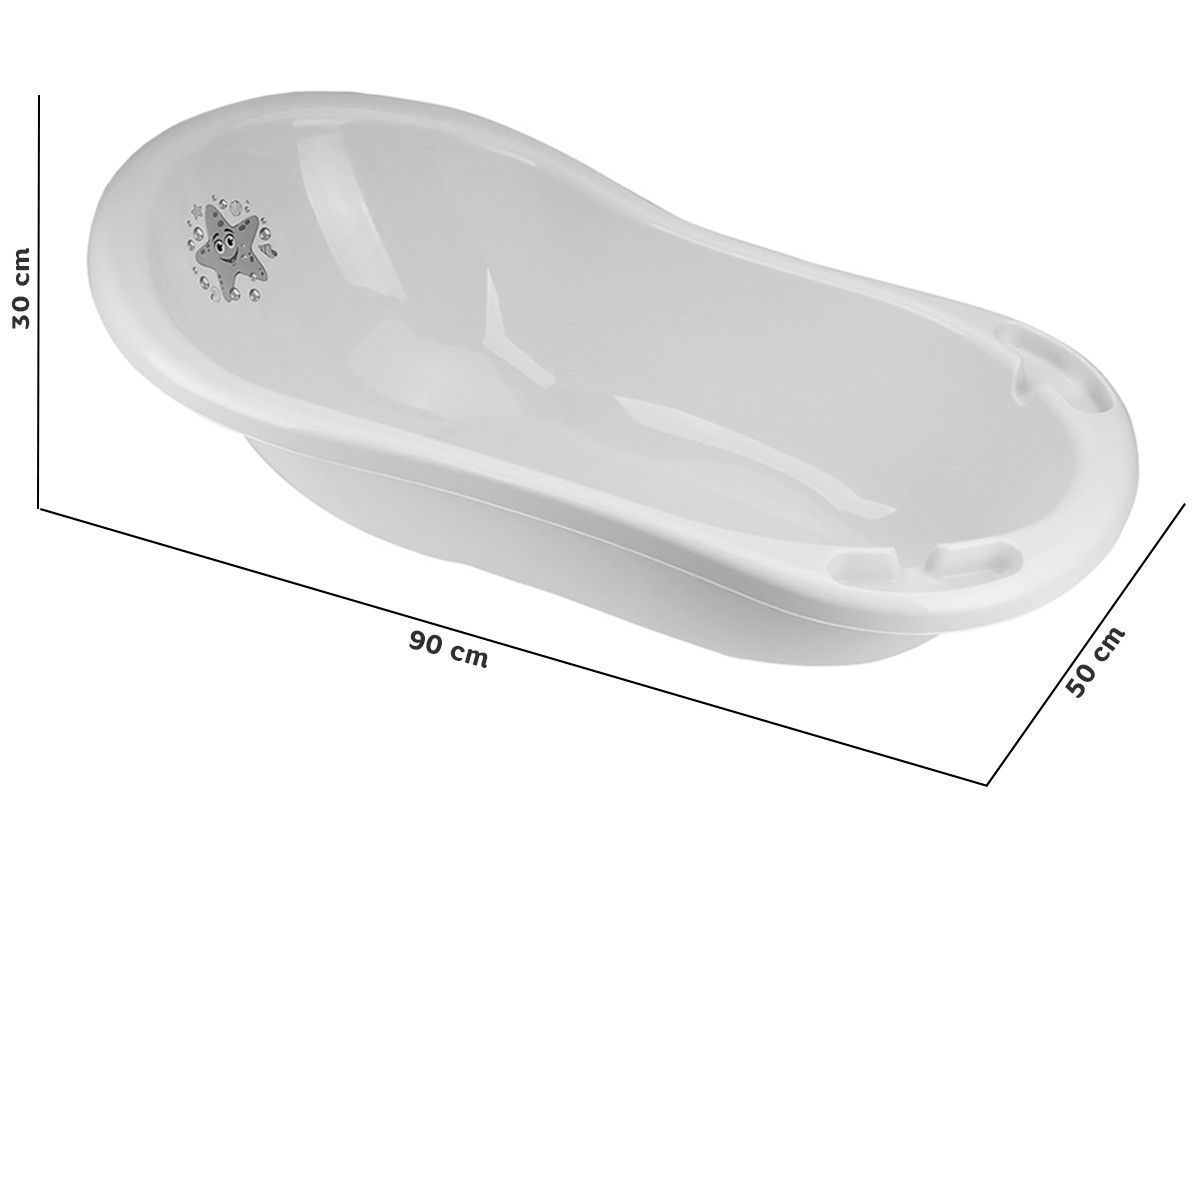 Ванночка для купания, 90 см (белая)